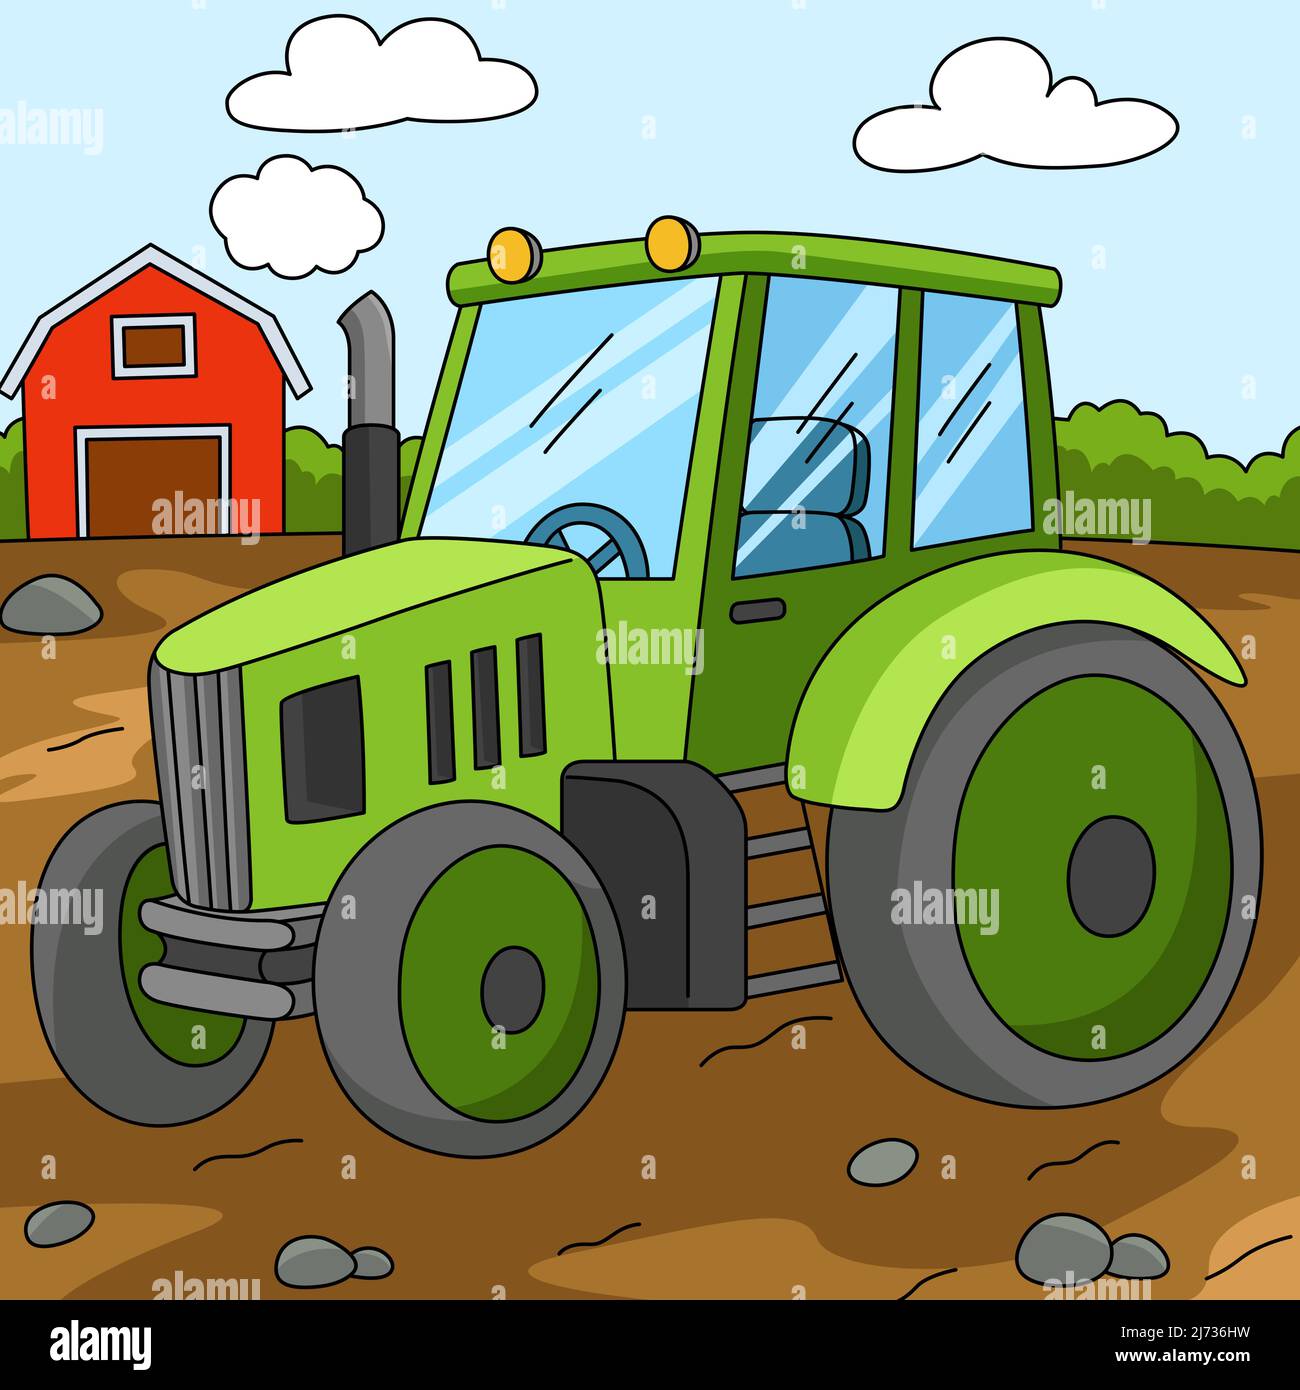 Dibujos animados de tractor fotografías e imágenes de alta resolución -  Página 2 - Alamy